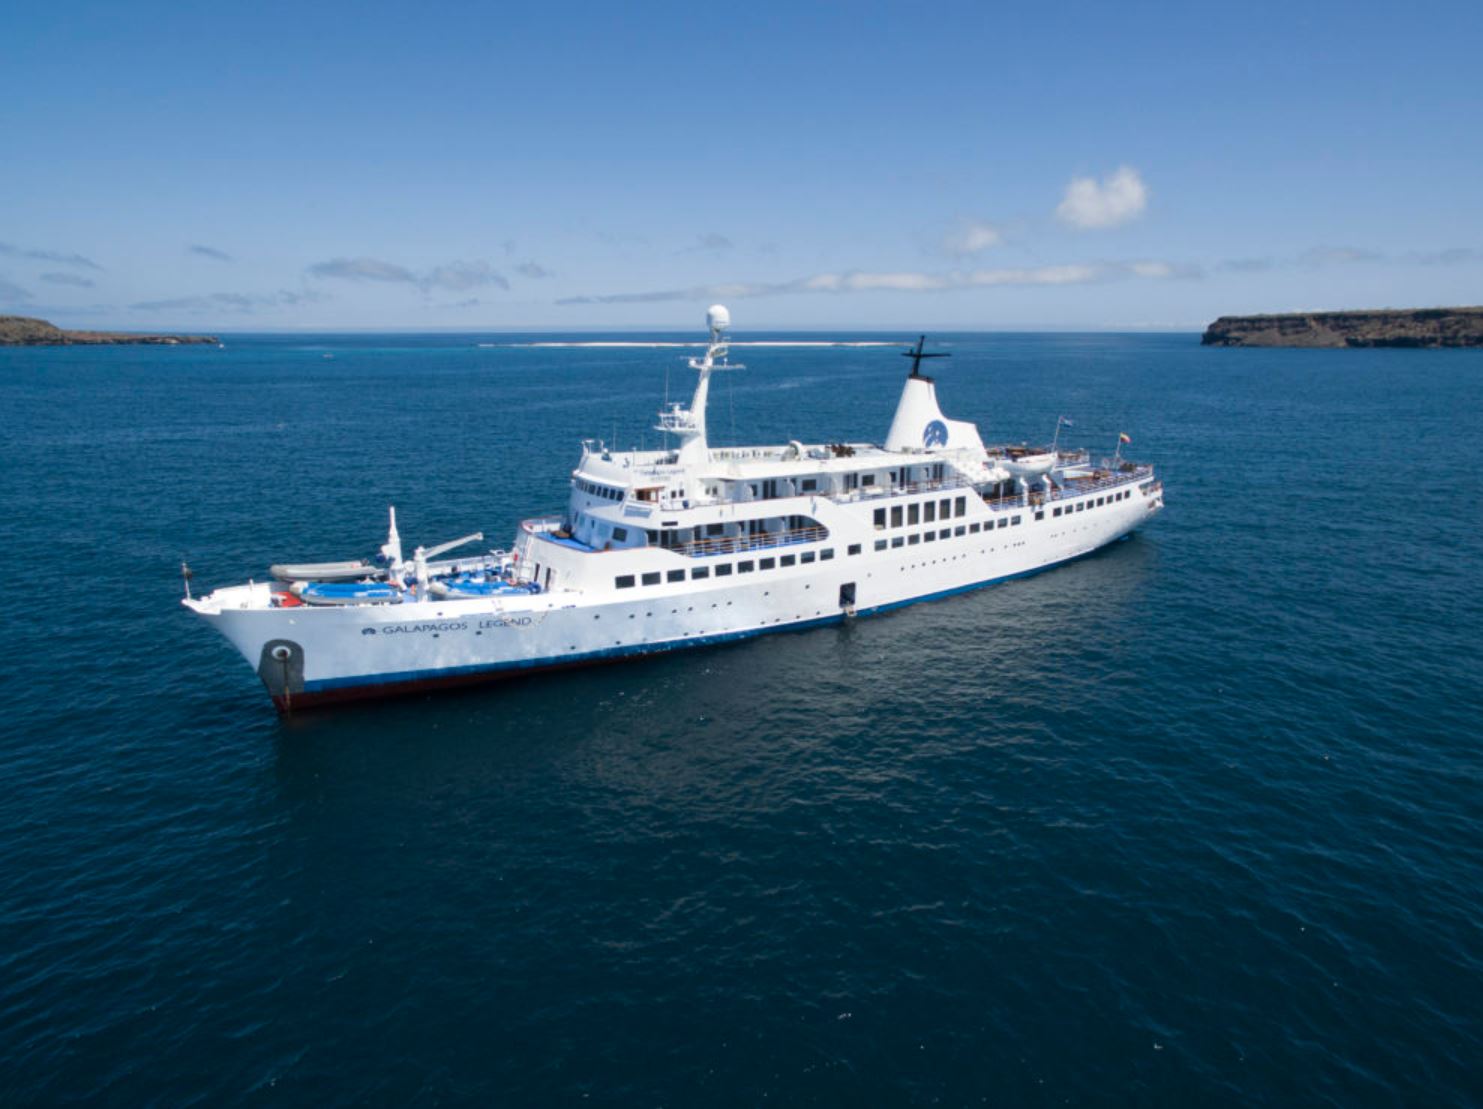 MV Galapagos Legend Boutique Expedition Cruise Schiff, i.d.R. mit deutschsprachigem Guide: Galapagos Legend Boutique Expedition Schiff 8 Tage/7 Nächte Kreuzfahrt